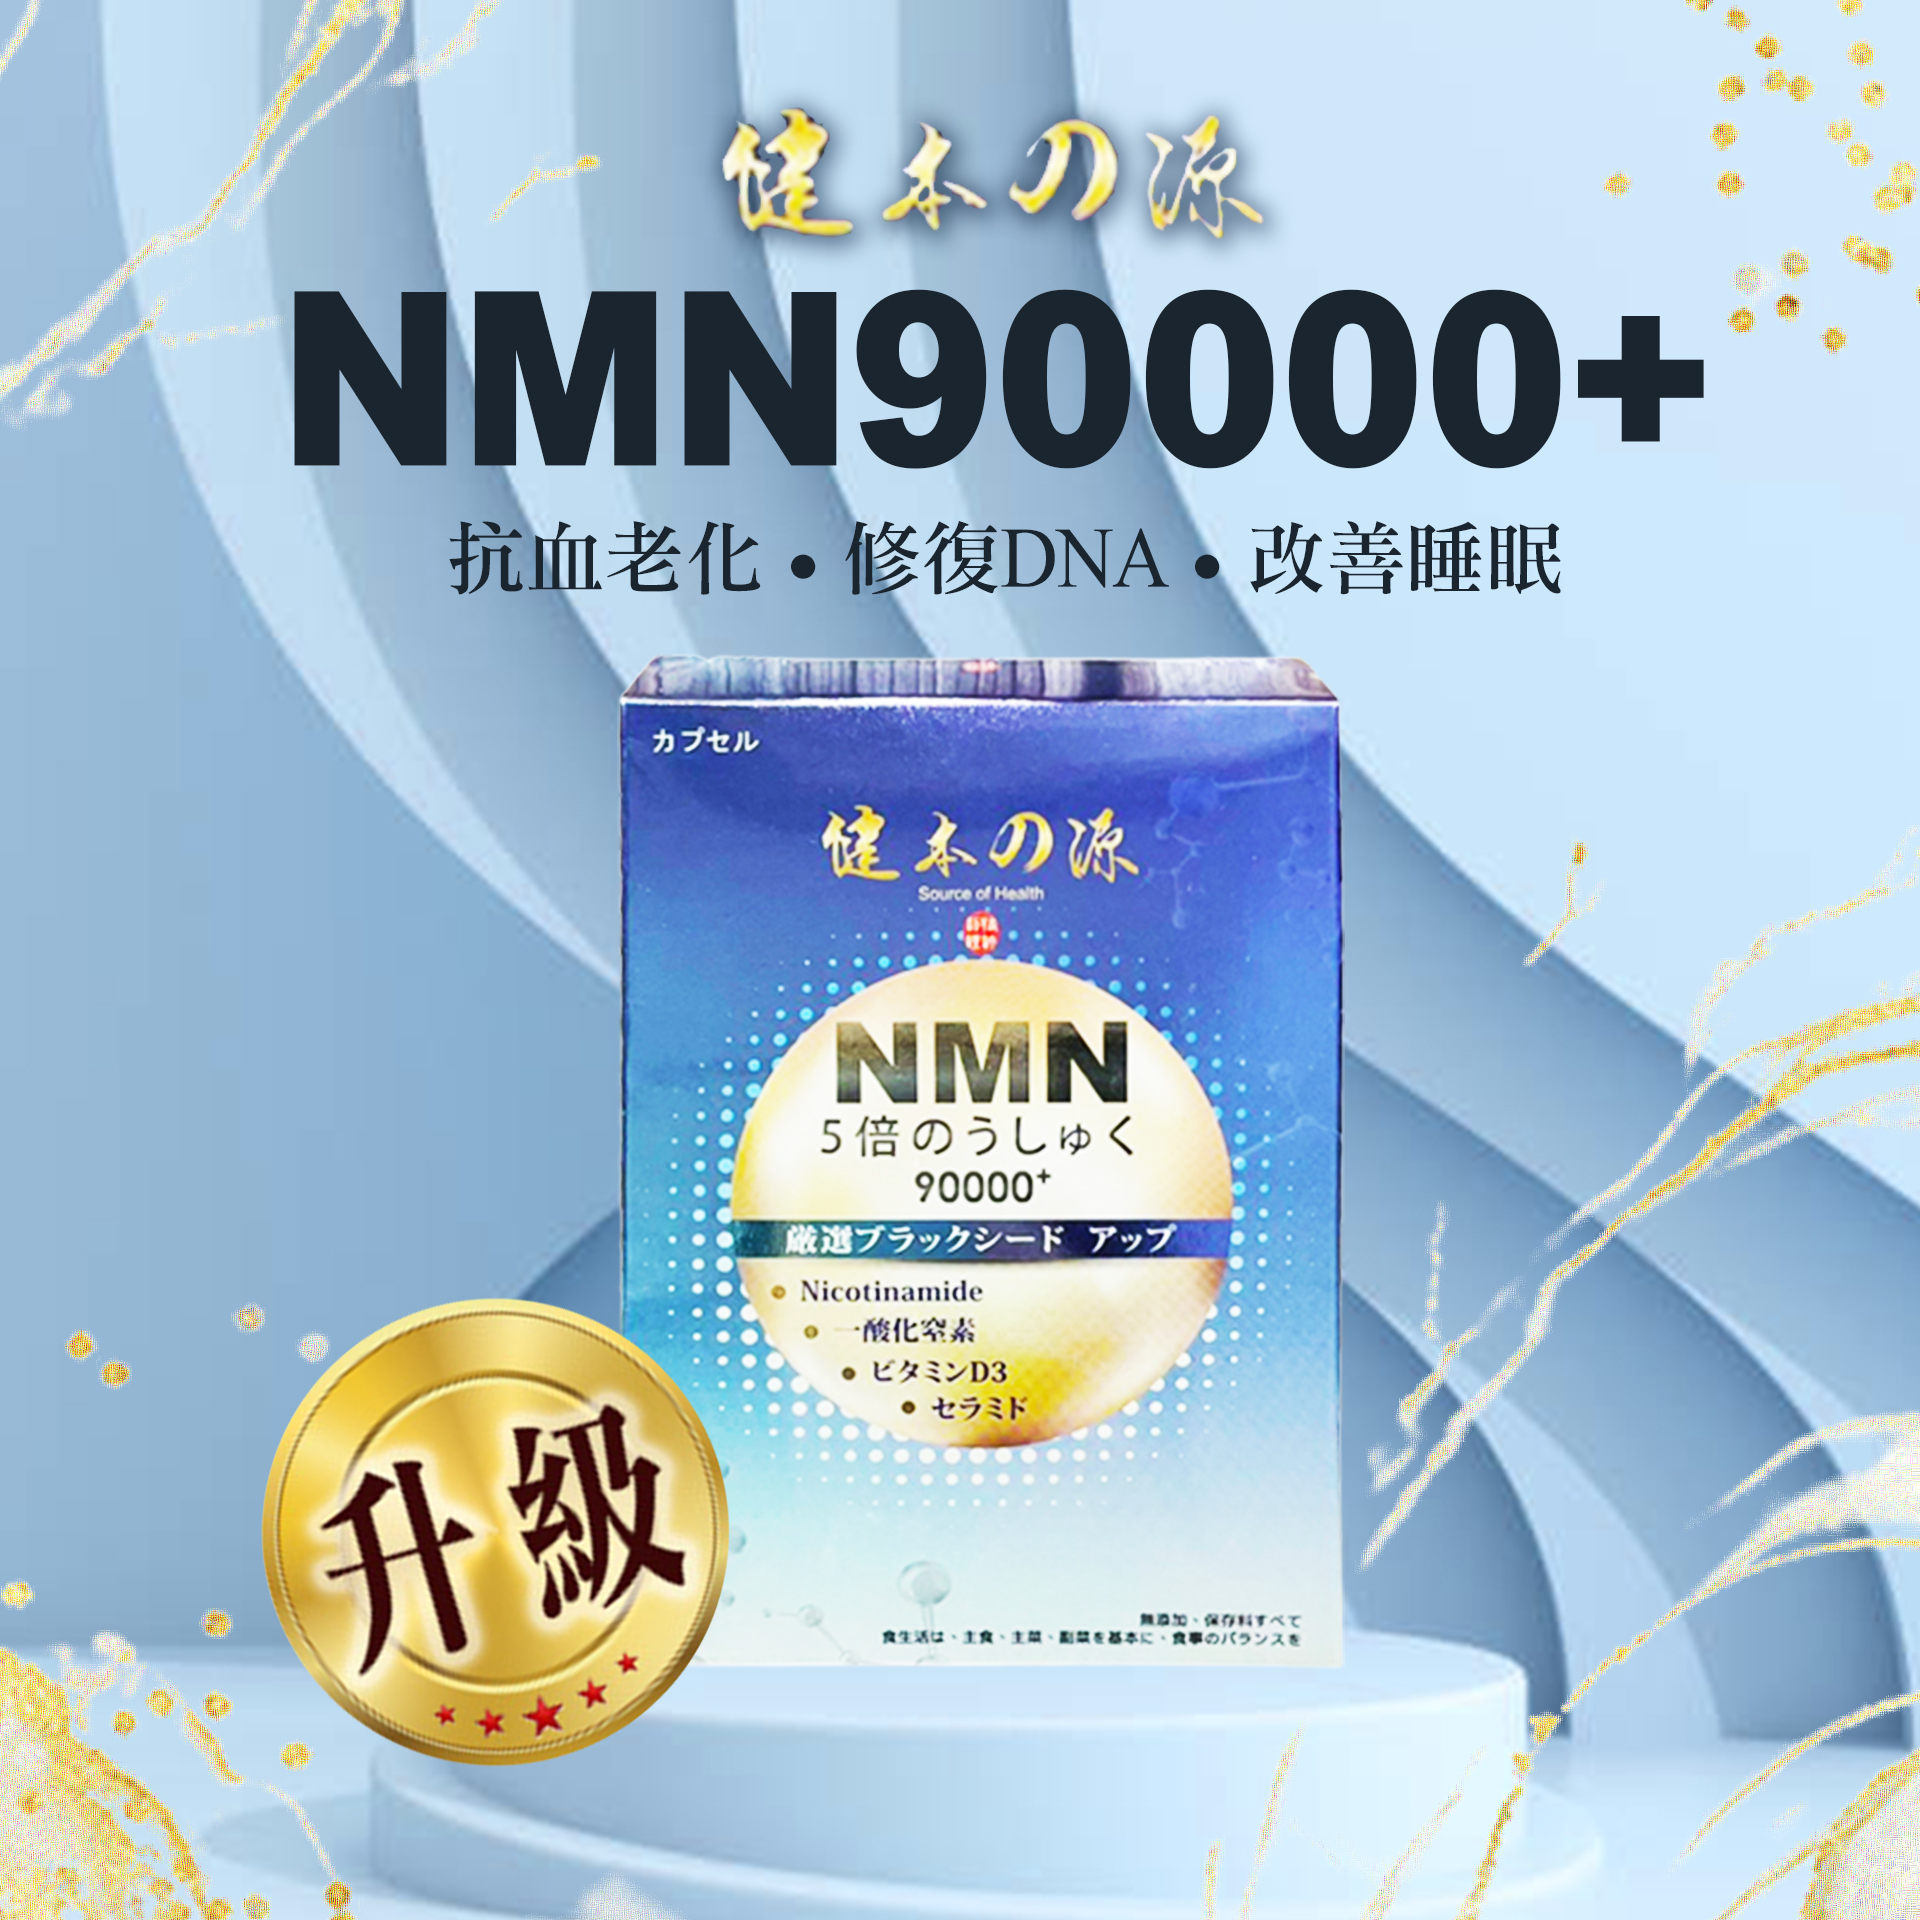 健本之源 - NMN Ex Plus 90000+五倍濃縮強效 ( 30粒/盒 )